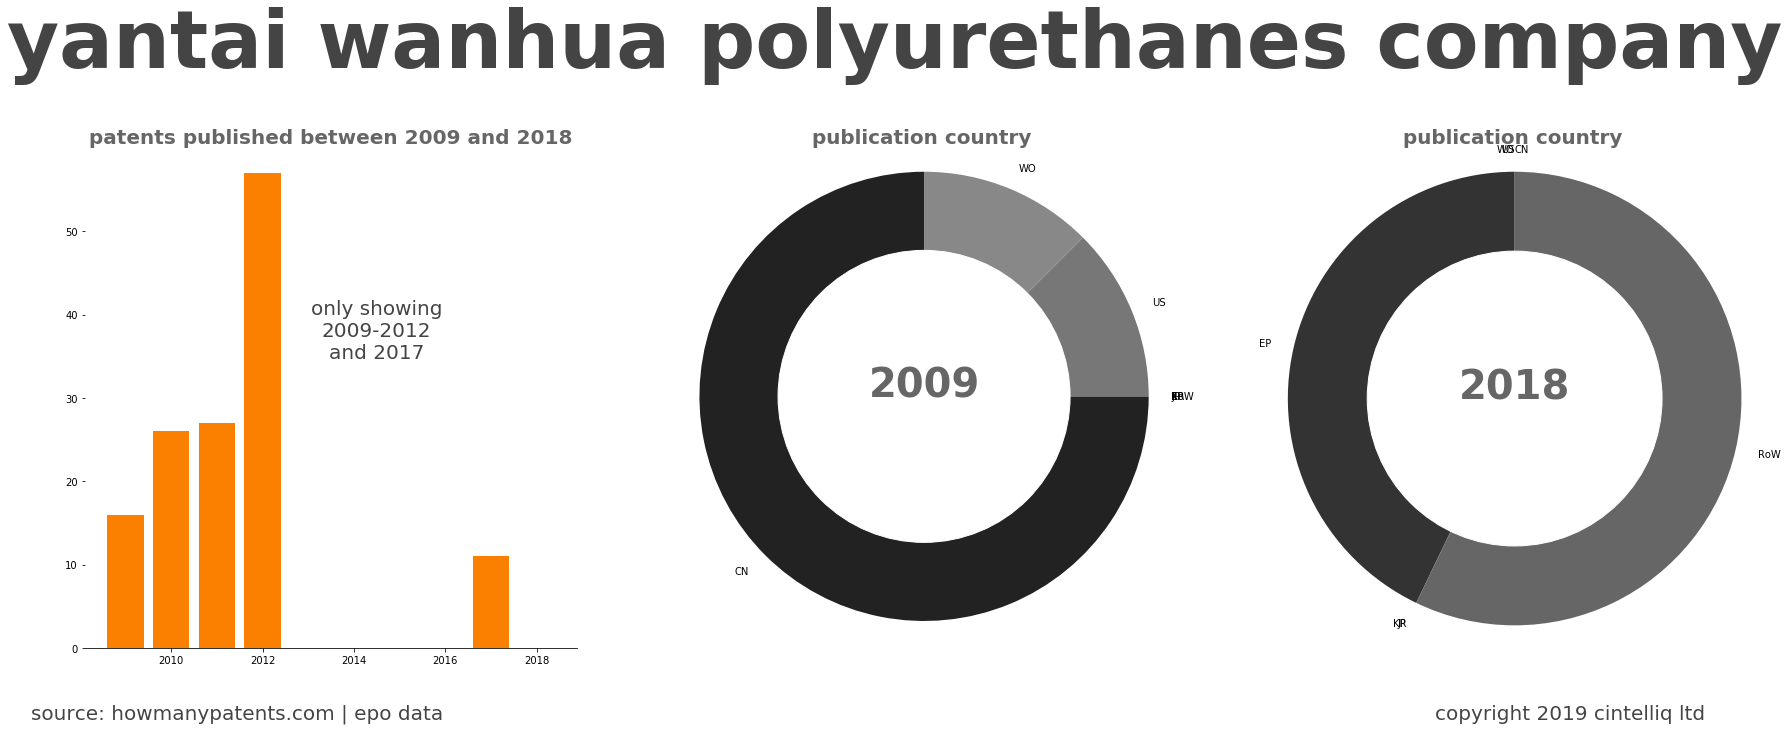 summary of patents for Yantai Wanhua Polyurethanes Company